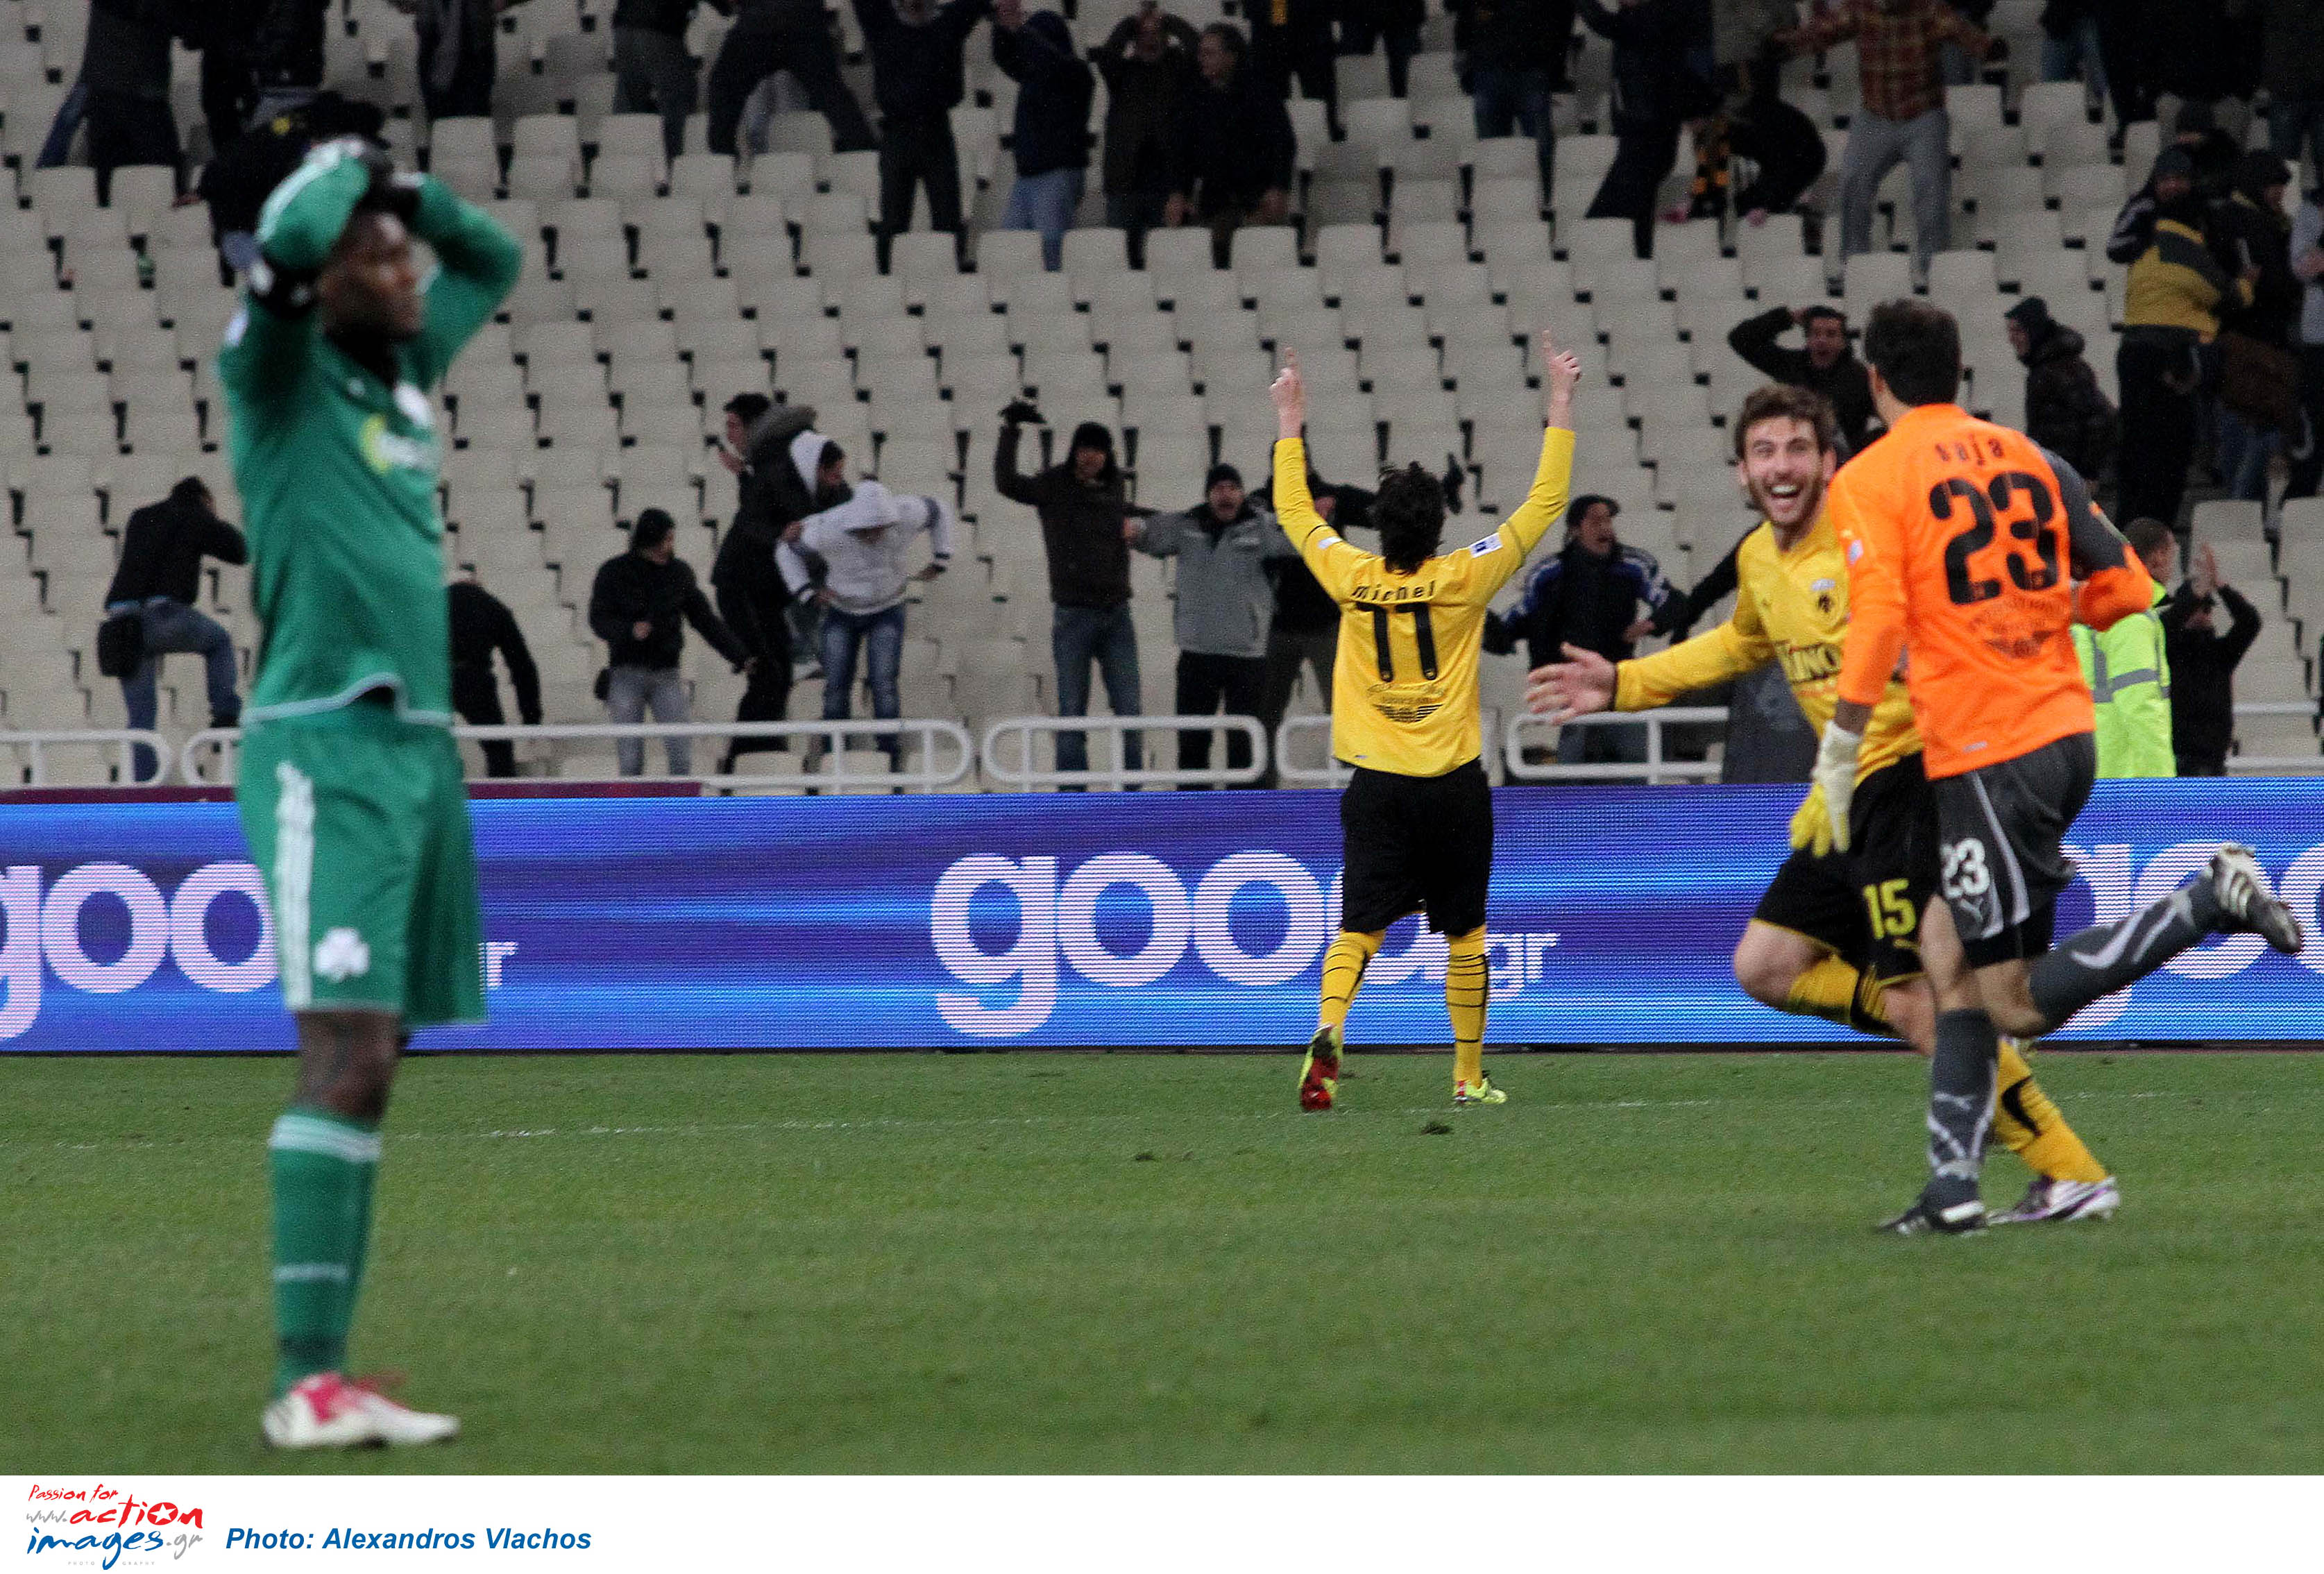 <b>Κύπελλο Ελλάδας </b>Ουρανοκατέβατη πρόκριση ΑΕΚ παρά την ήττα με 2-3 από τον ΠΑΟ